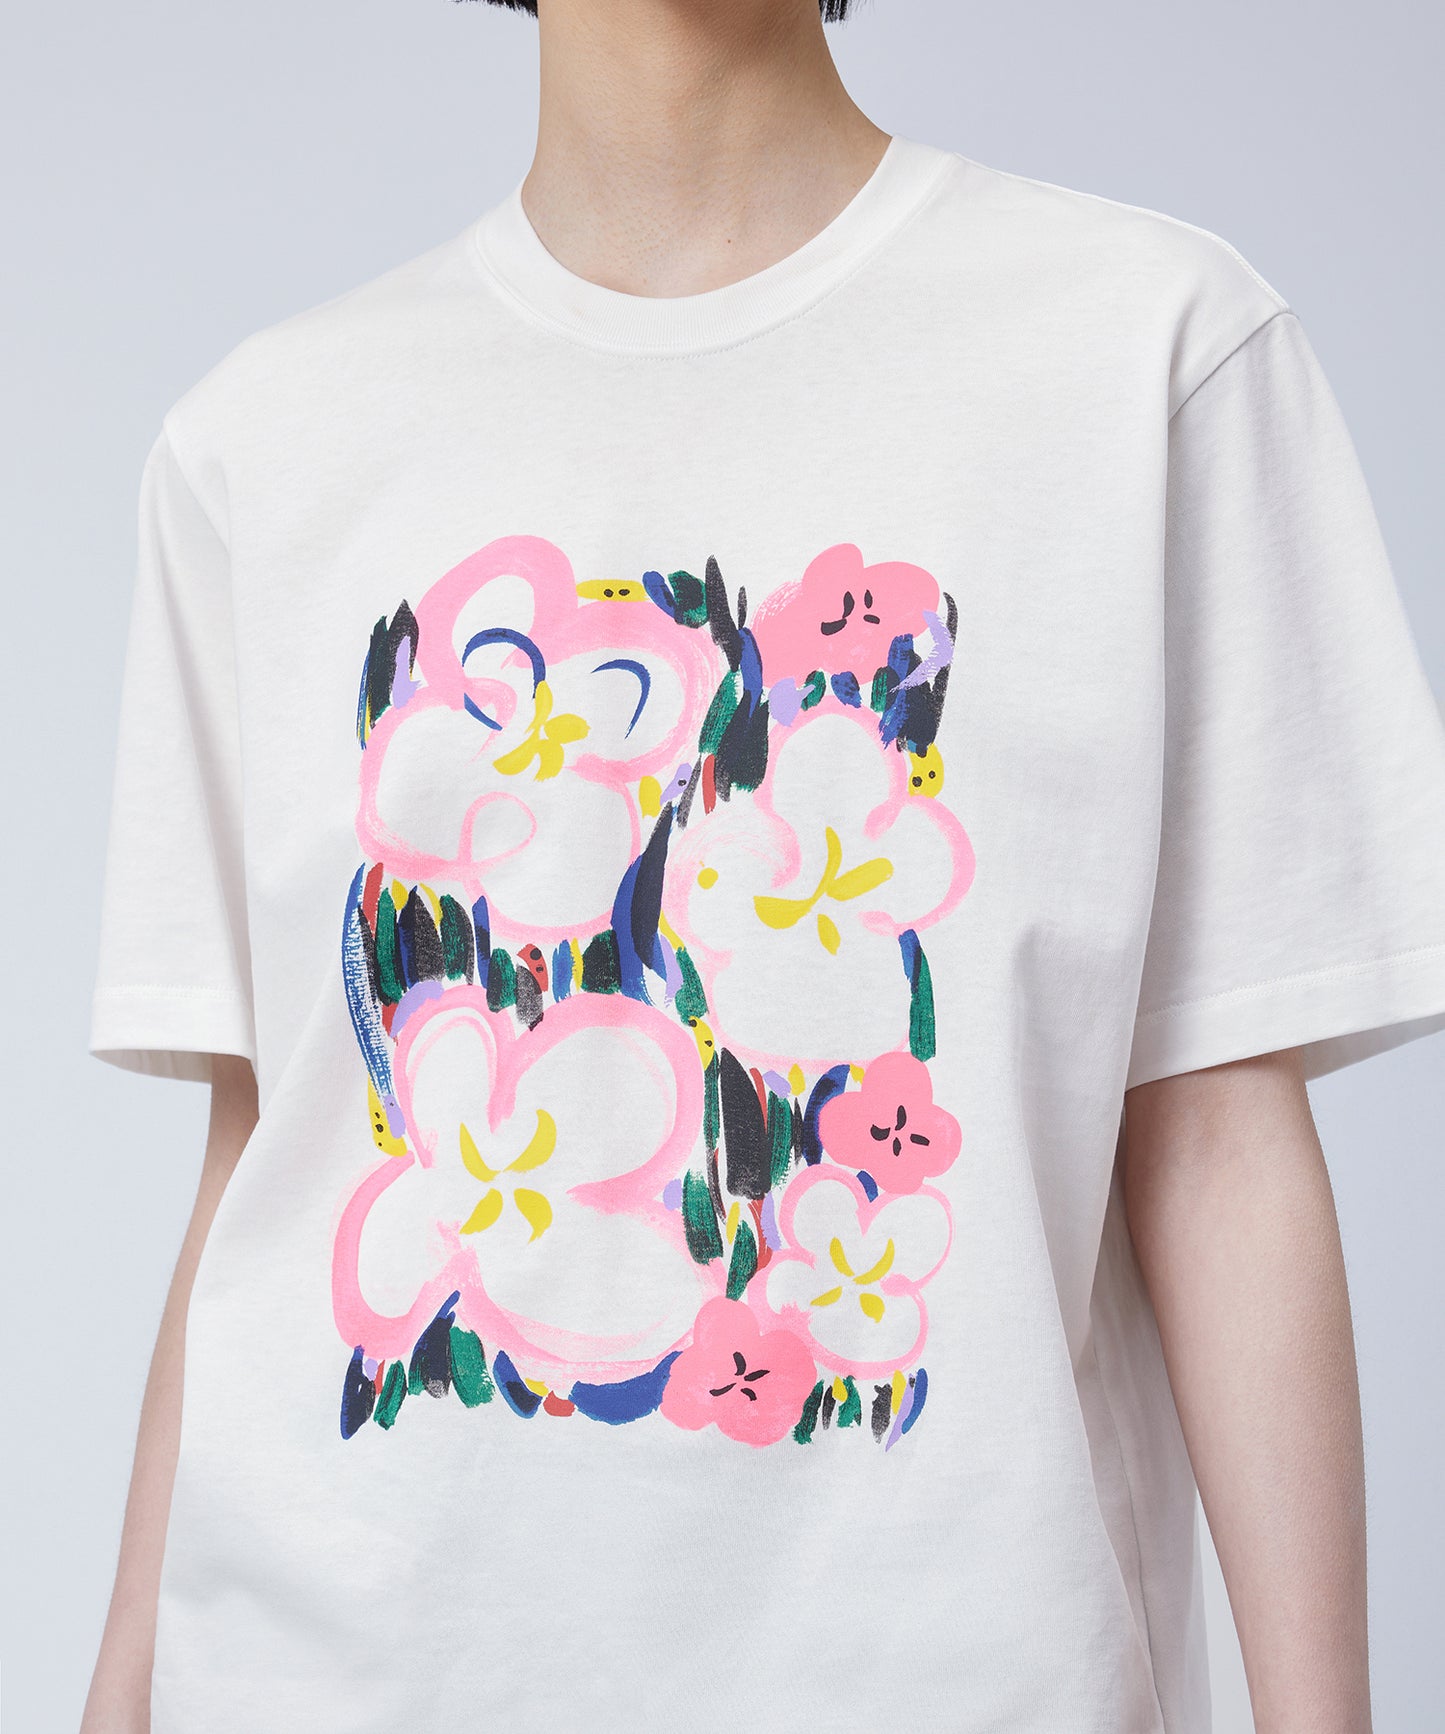 Graffiti Abstract Flower T-Shirt